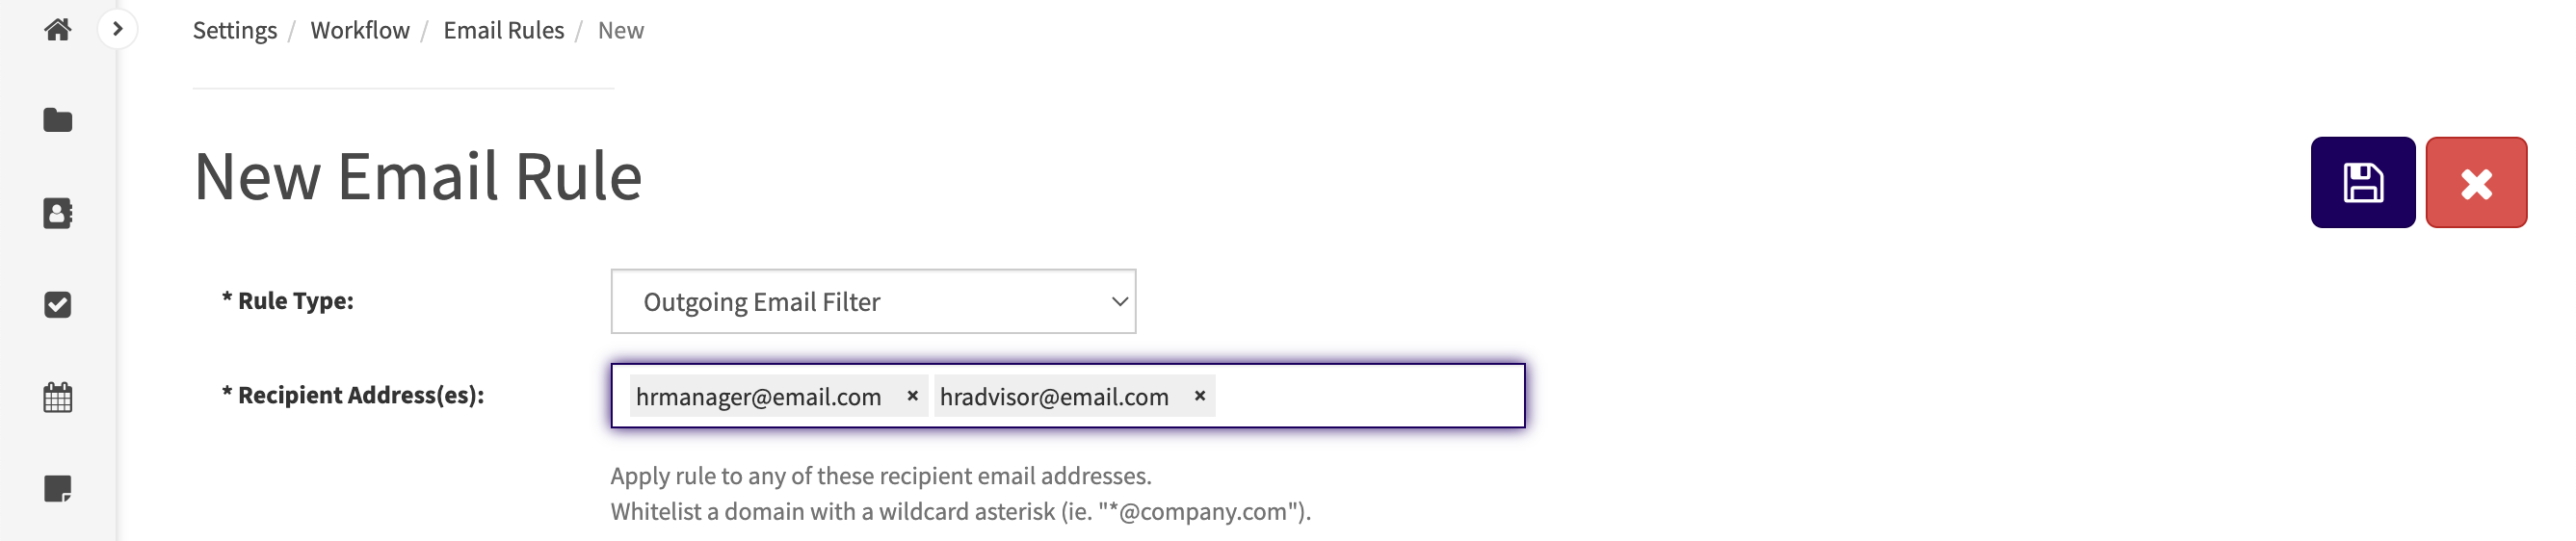 Deux e-mails ont été saisis dans le champ Adresse(s) du destinataire : "hrmanager@email.com" et "hradvisor@email.com".